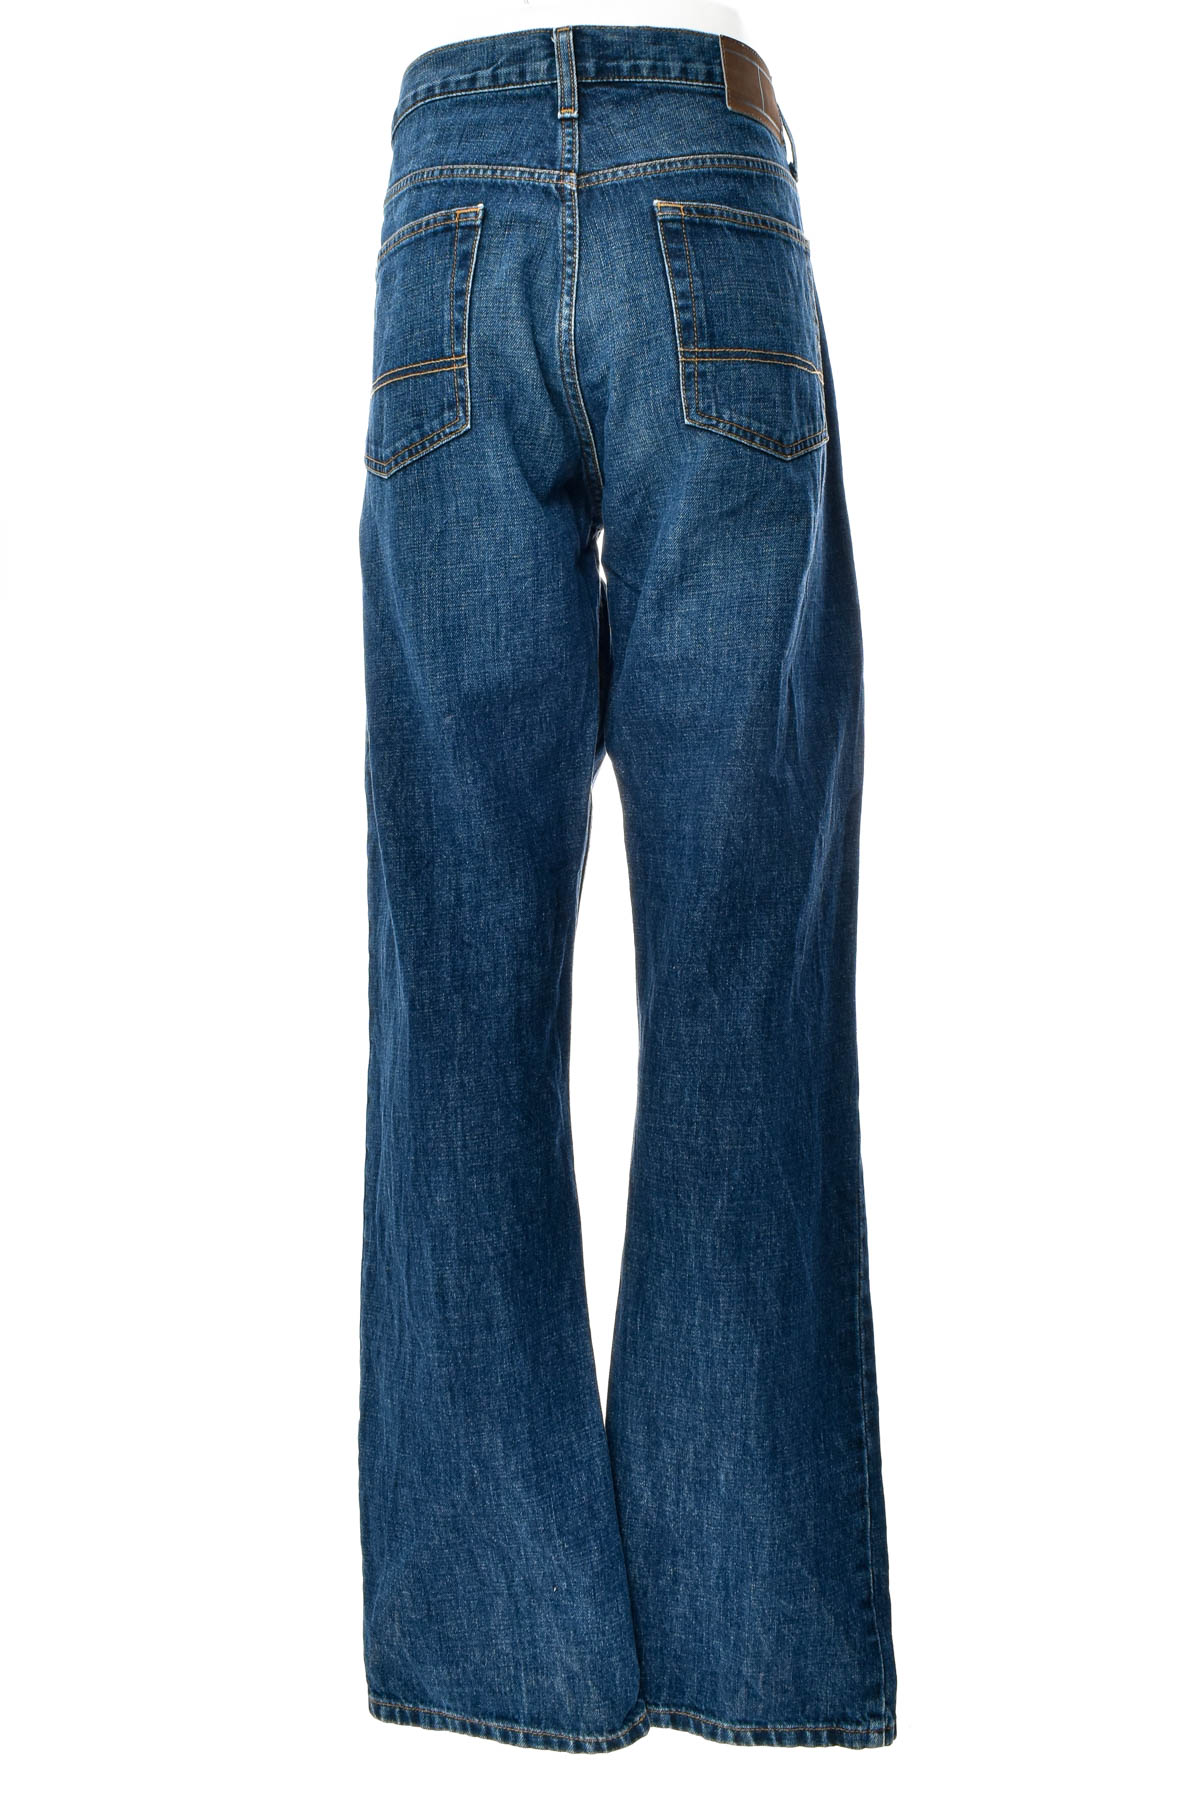 Men's jeans - TOMMY HILFIGER - 1